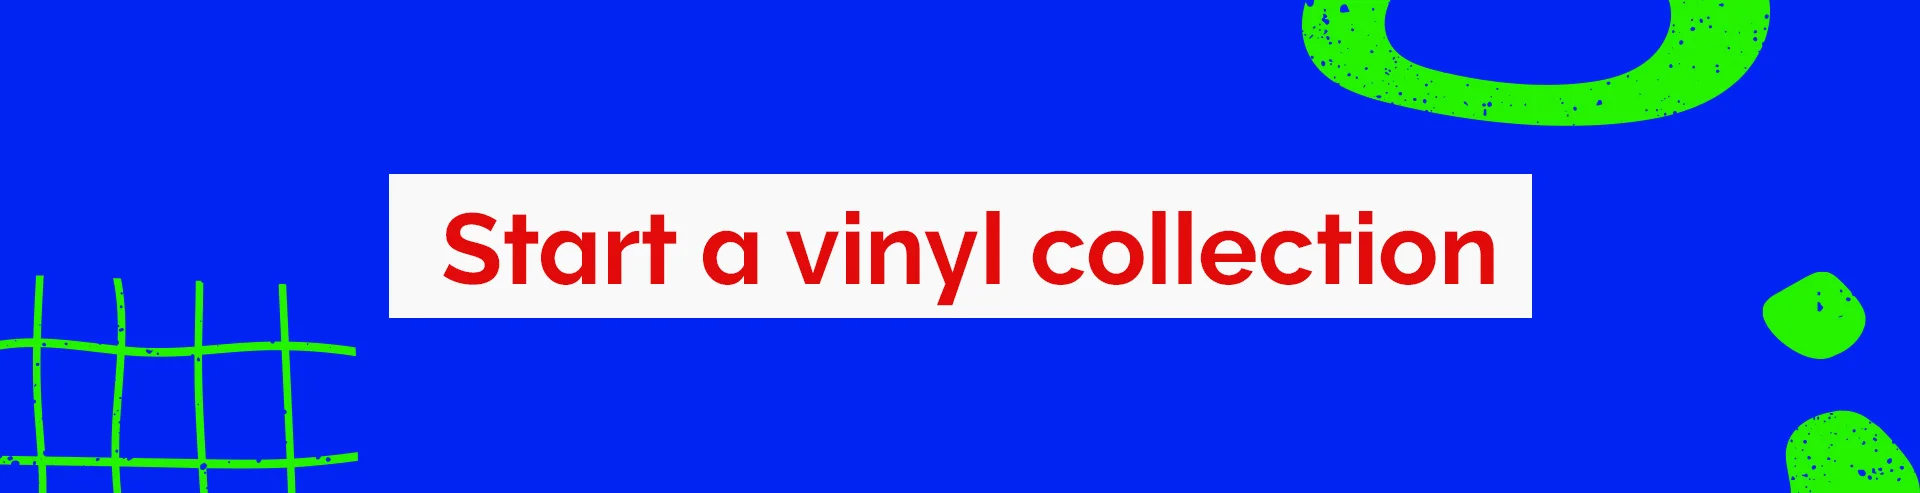 Full-Width-Gift-Idea-Vinyl-Collection-Desktop.webp